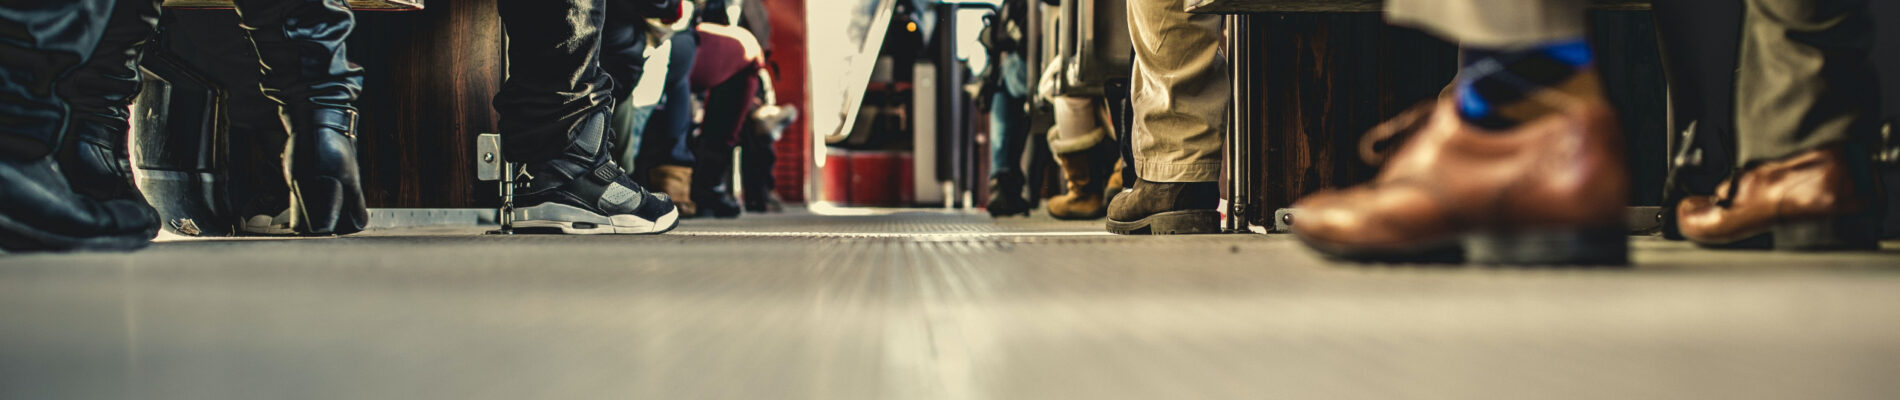 Voyageurs assis dans un train, pieds reposant sur le plancher.